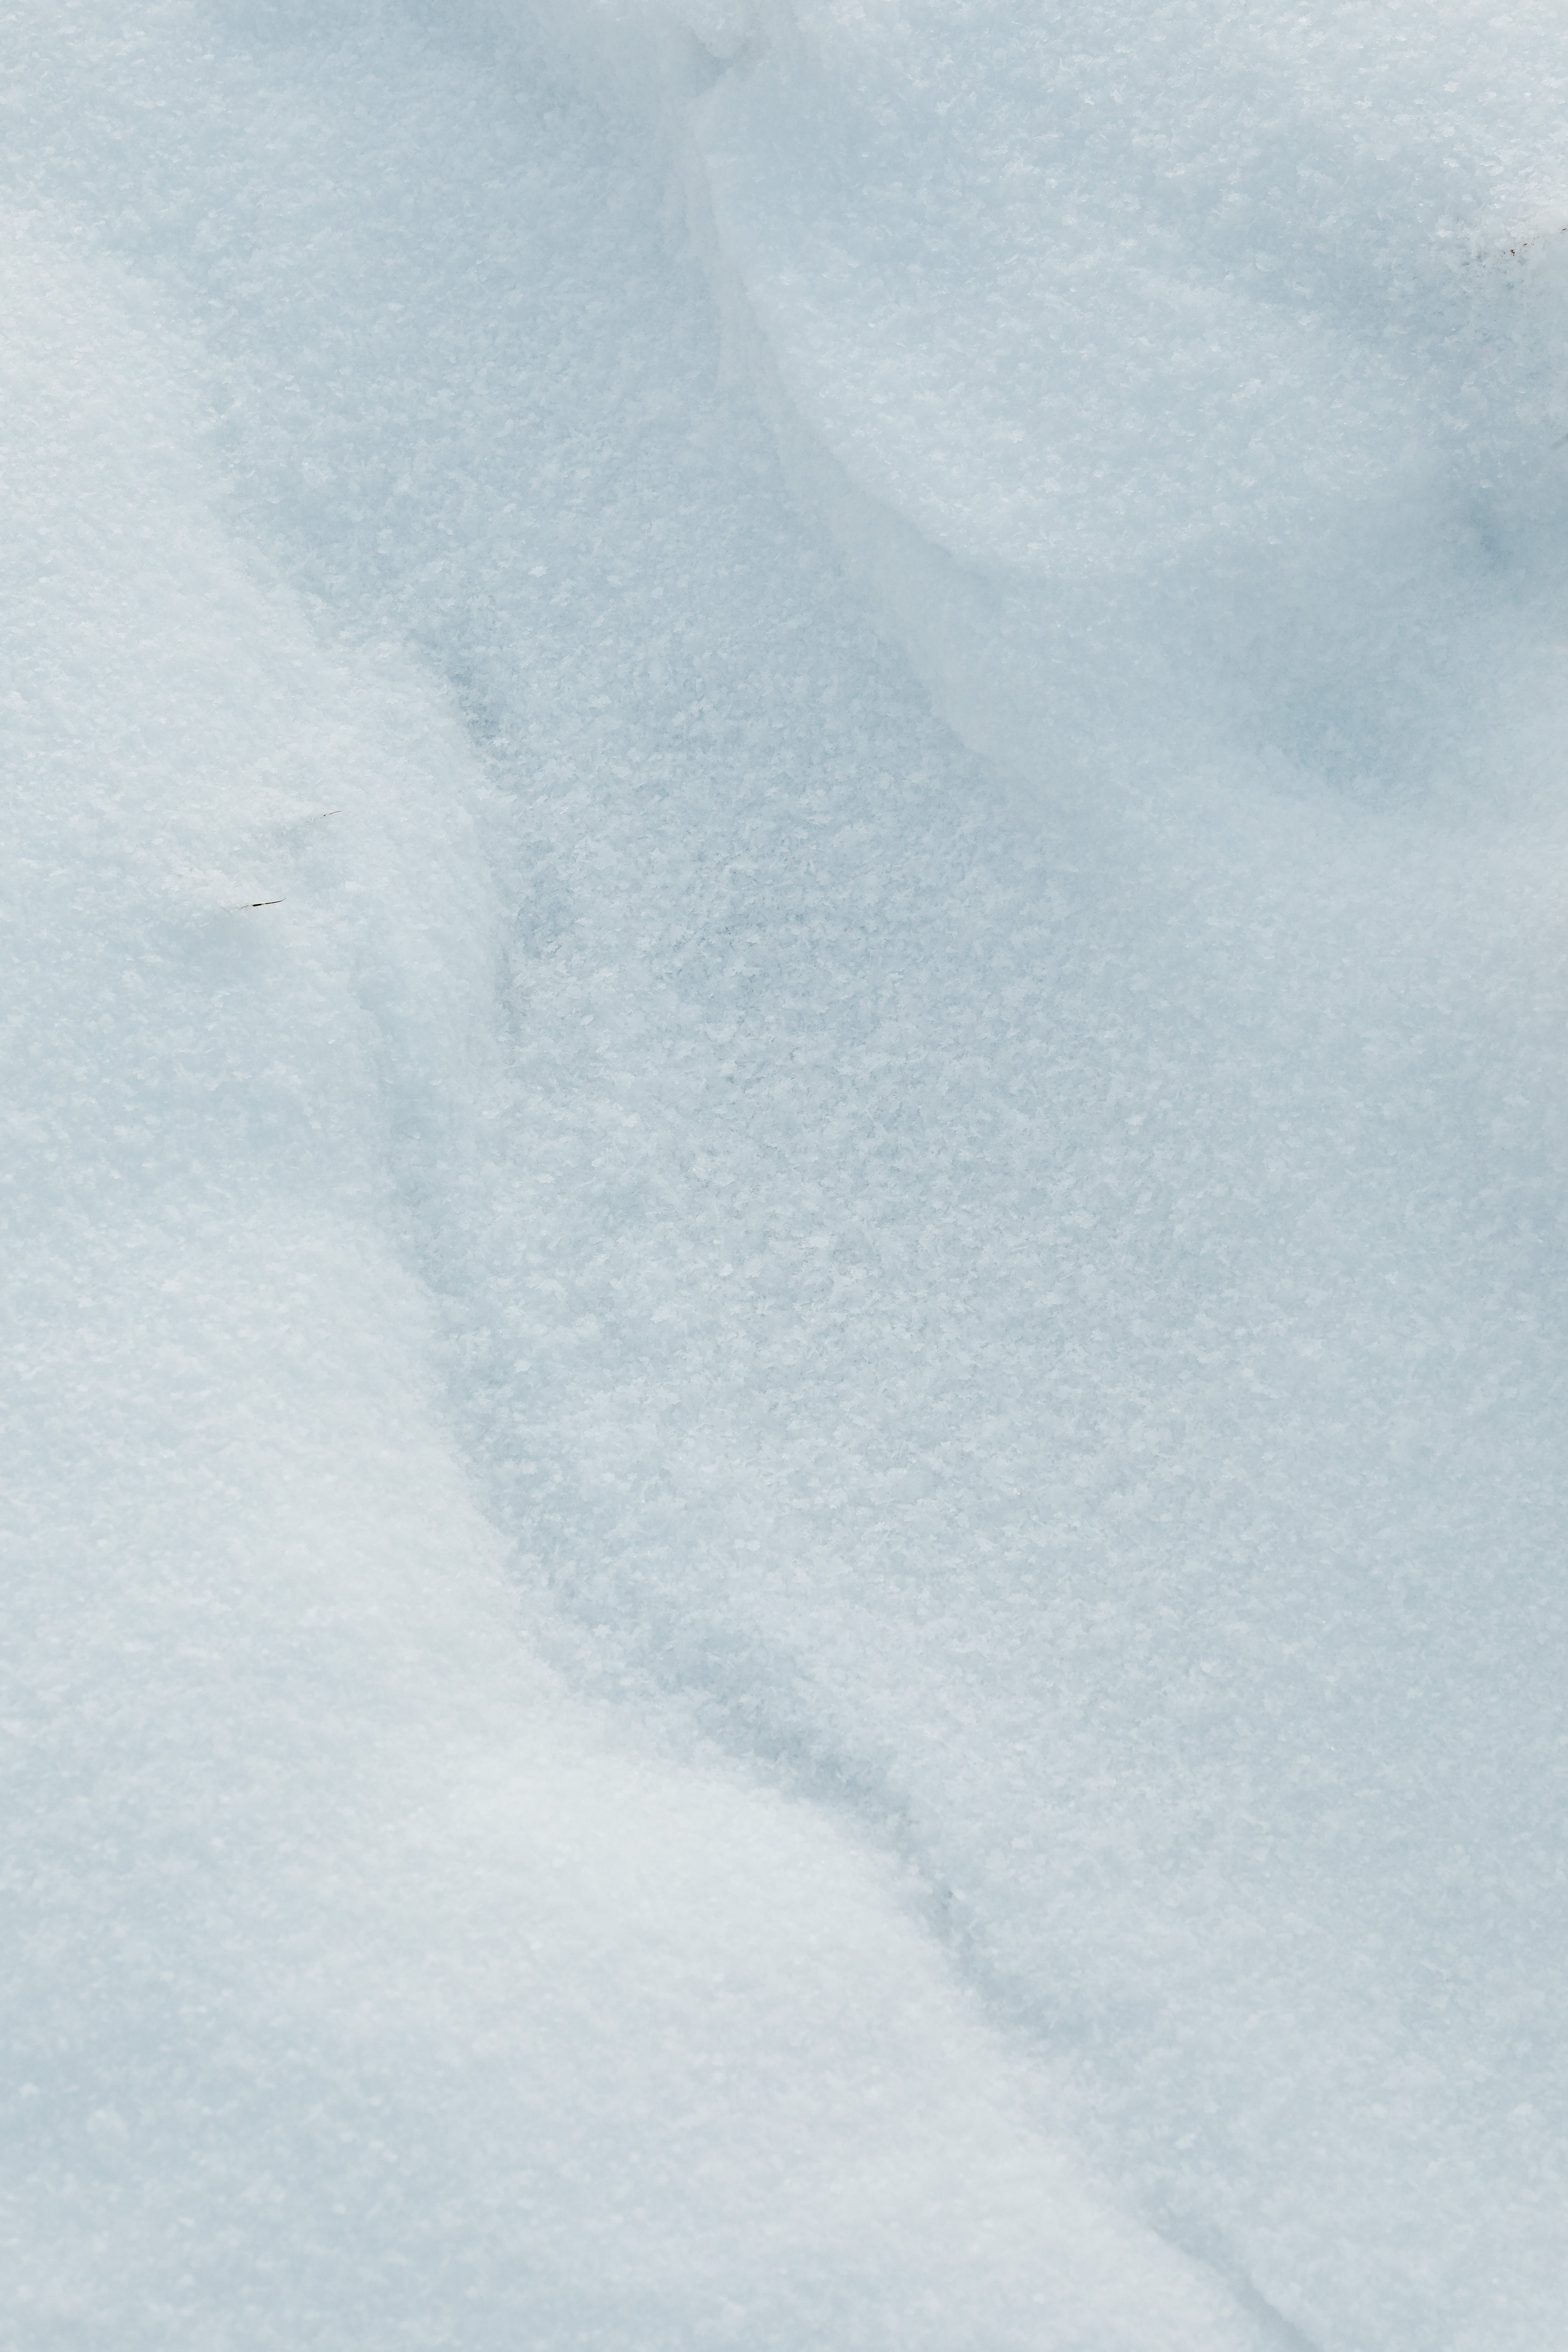  Schnee Hintergrundbild 4480x6720. Kostenloses Foto zum Thema: hintergrund, kalt, nahansicht, schnee, vertikaler schuss, wallpaper, weiß, winter